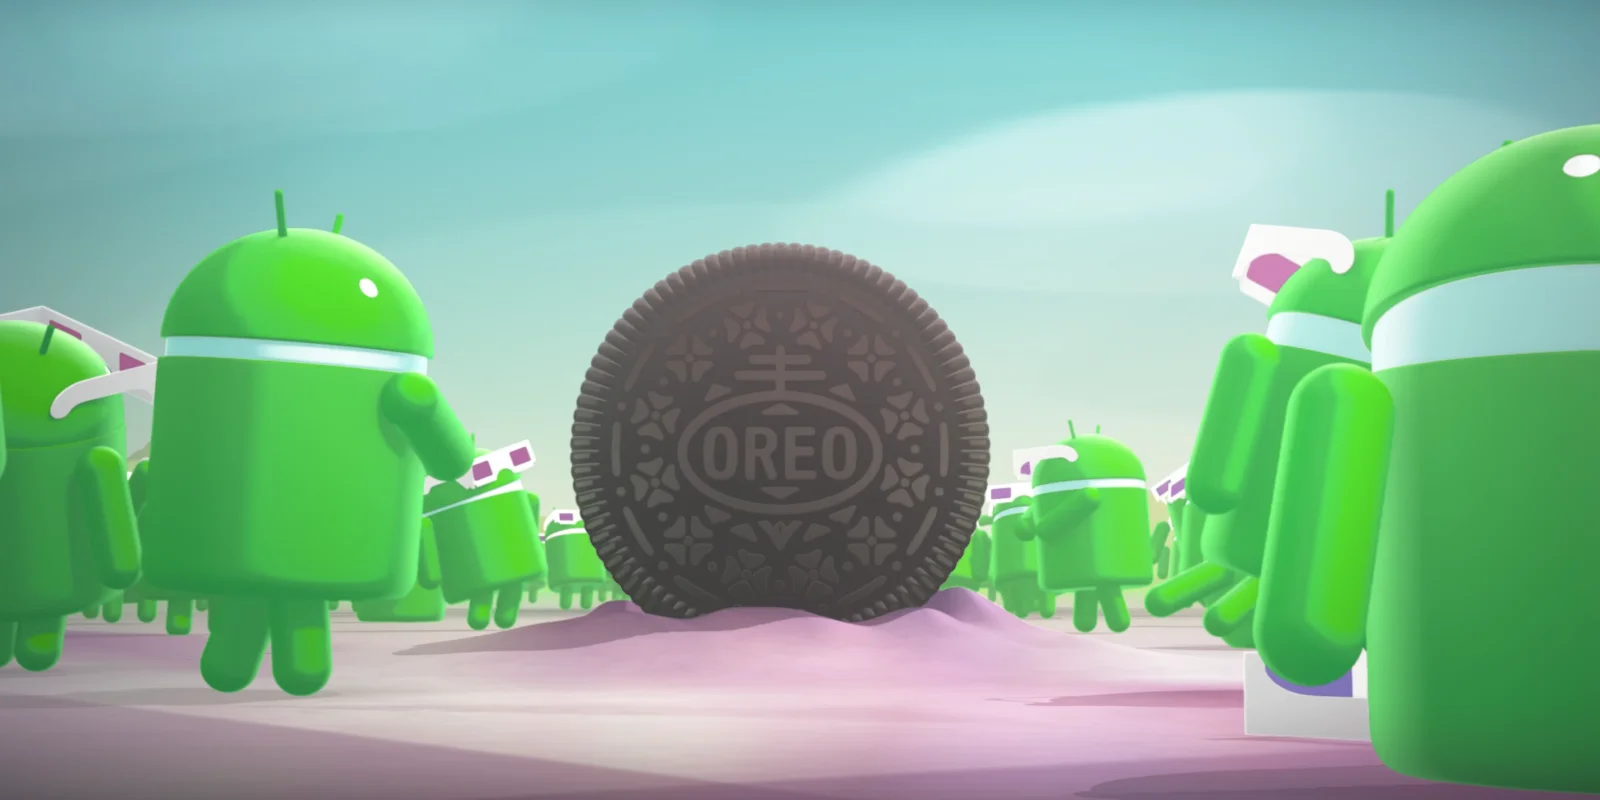 Android 8.0 Oreo: что это и кто получит? - фото 1